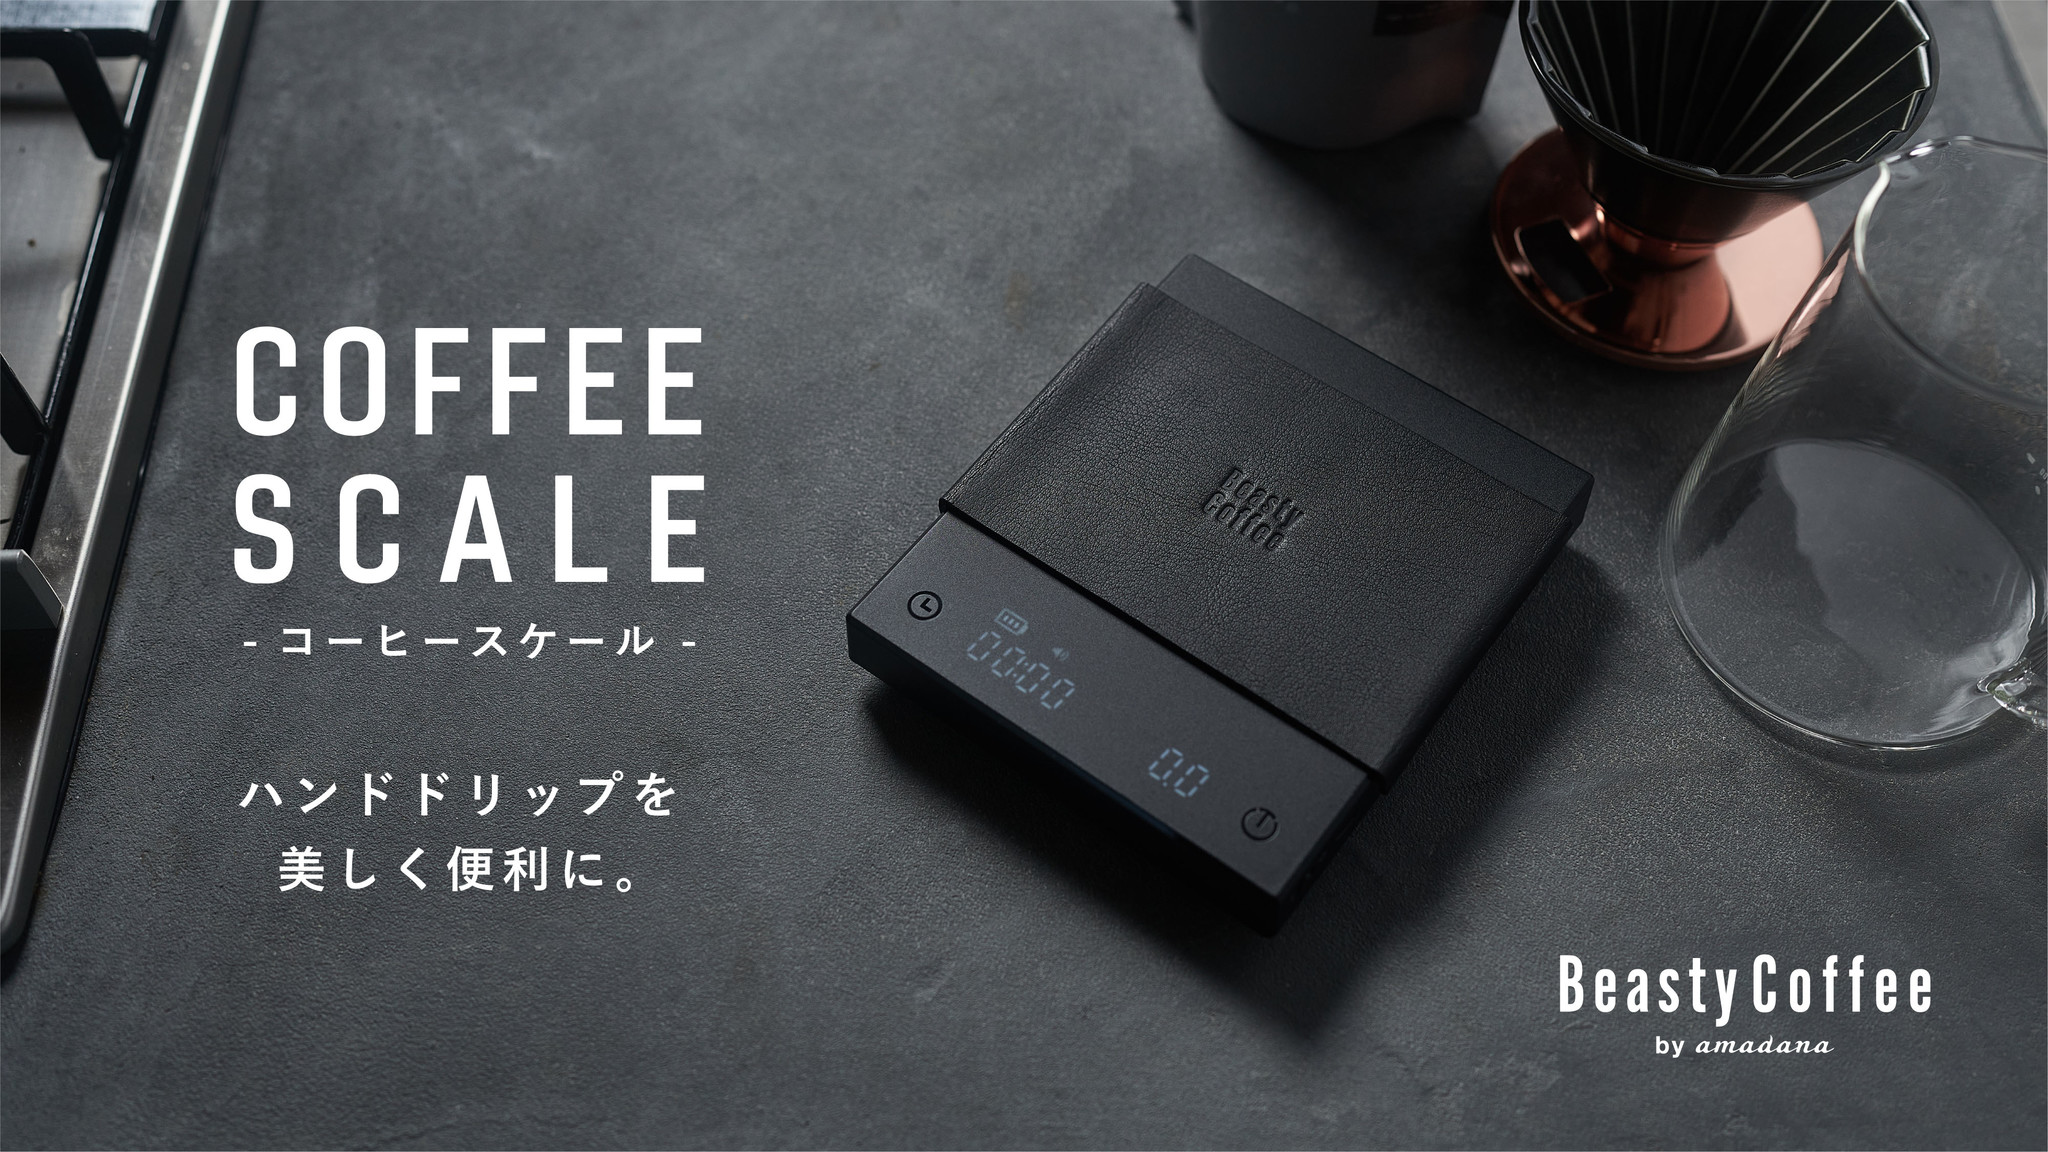 Beasty Coffee by amadana が新製品コーヒースケールとIHプレートの 